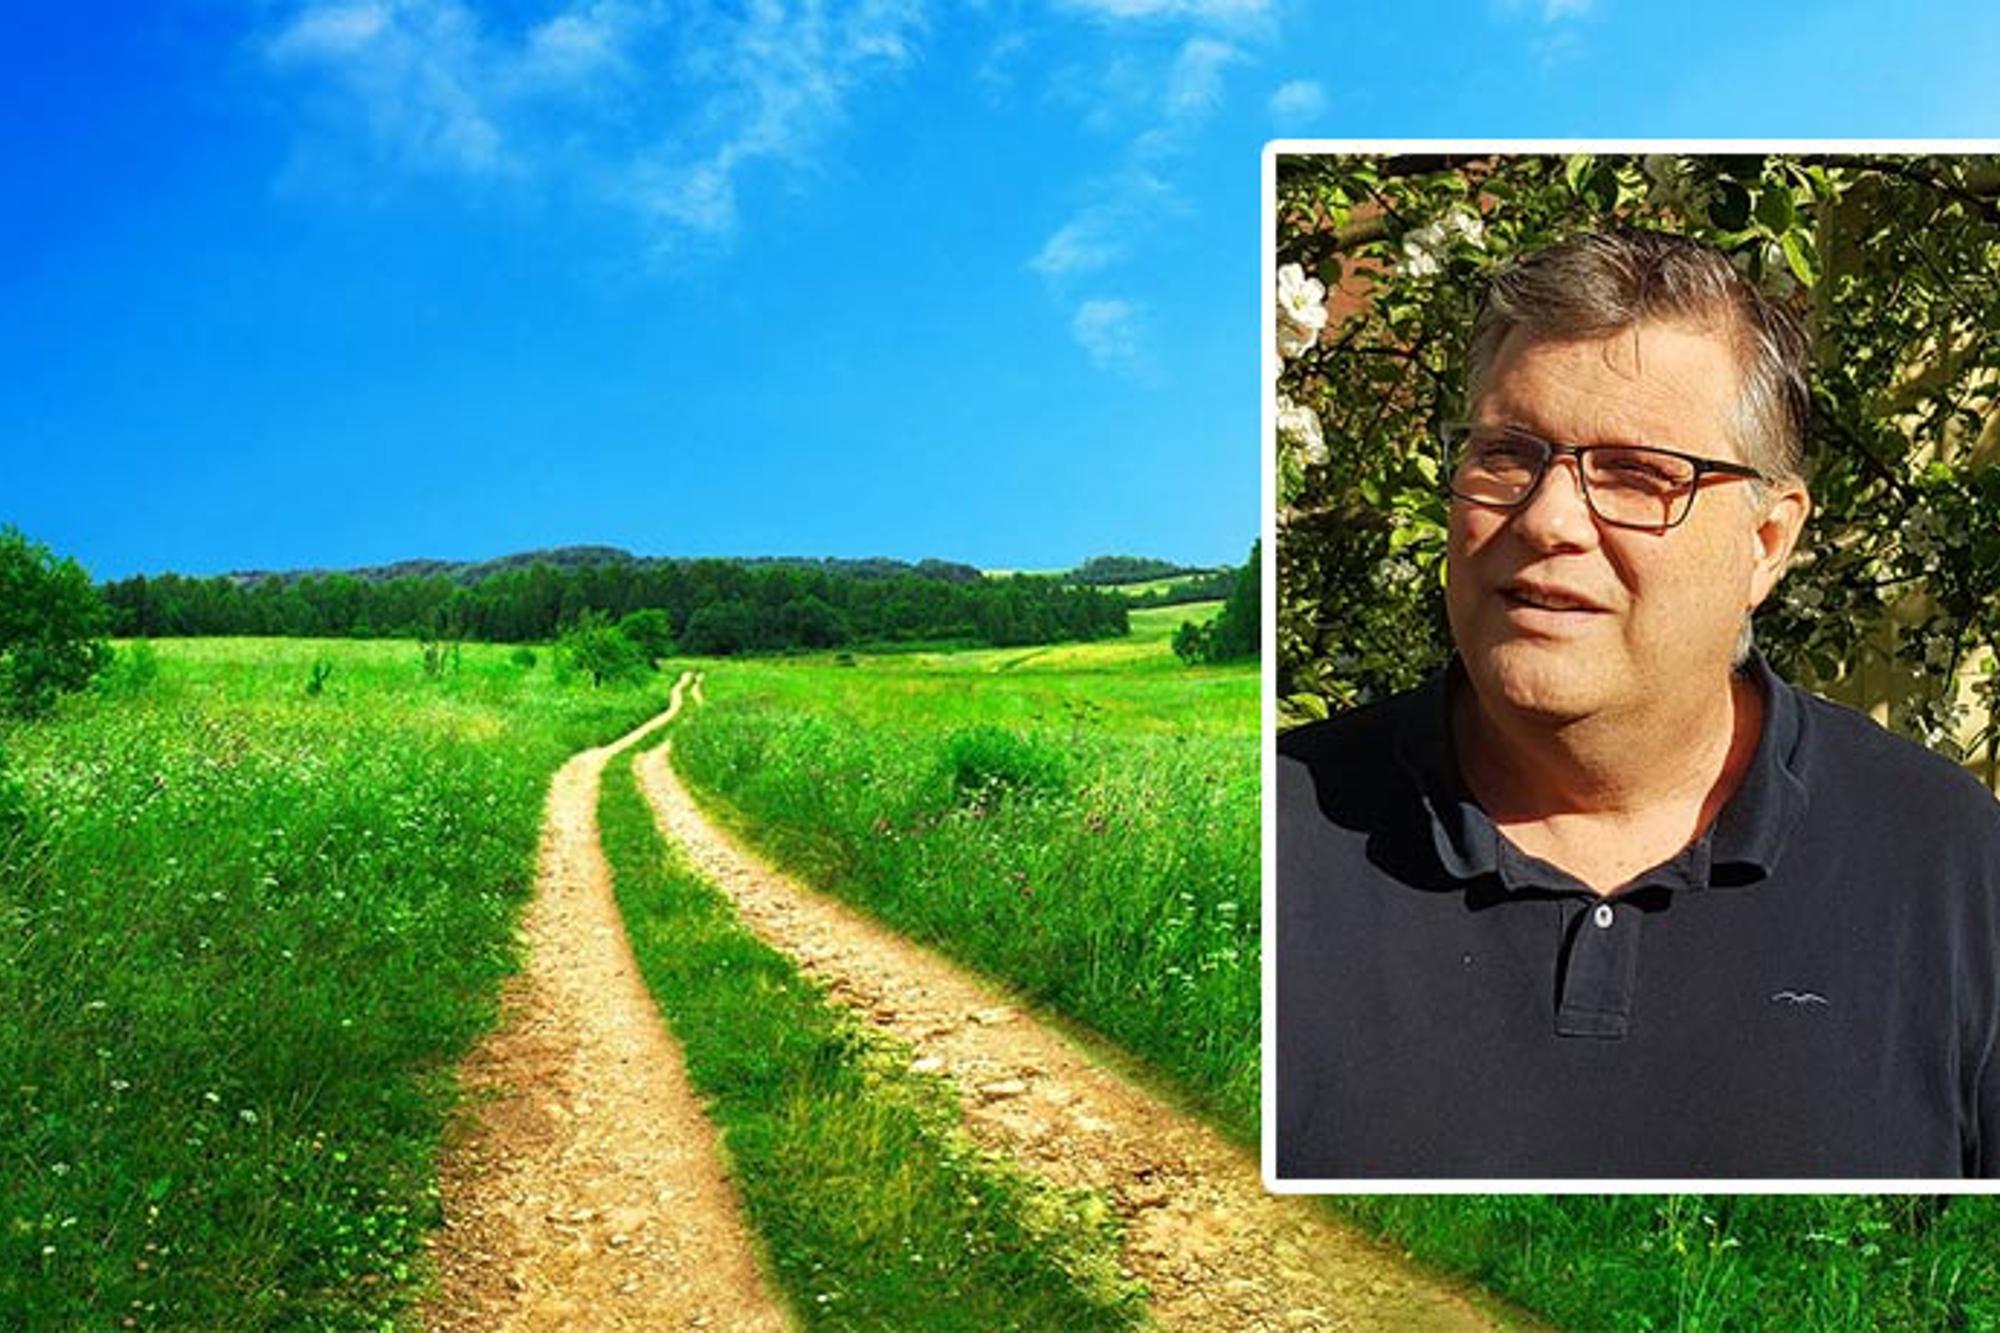 Till vänster: En stig på en stor grön äng. Till höger: Porträttbild av Peter Flodén som tittar till vänster om kameran.